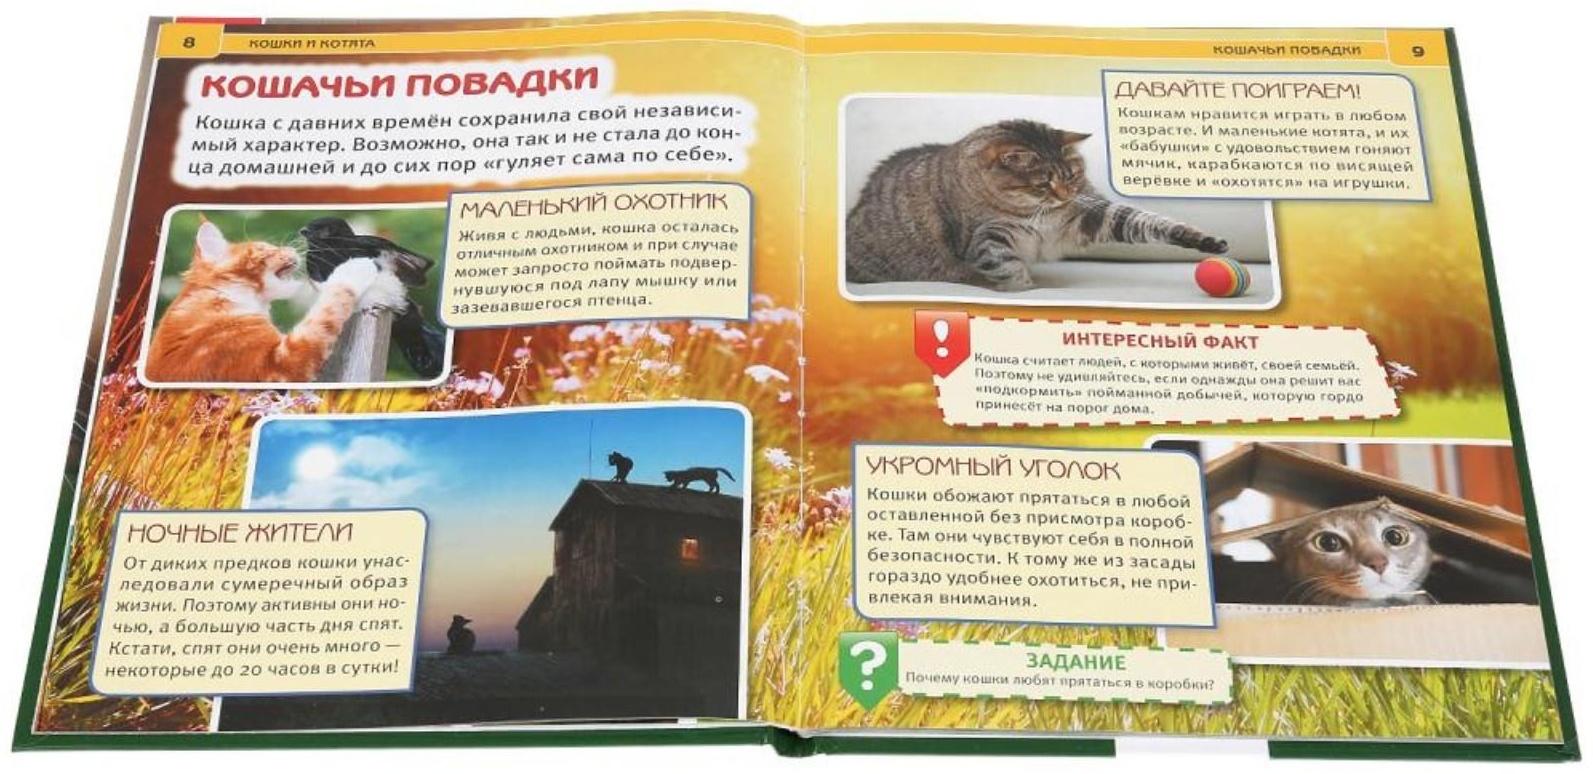 Энциклопедия А4 «Кошки и котята»